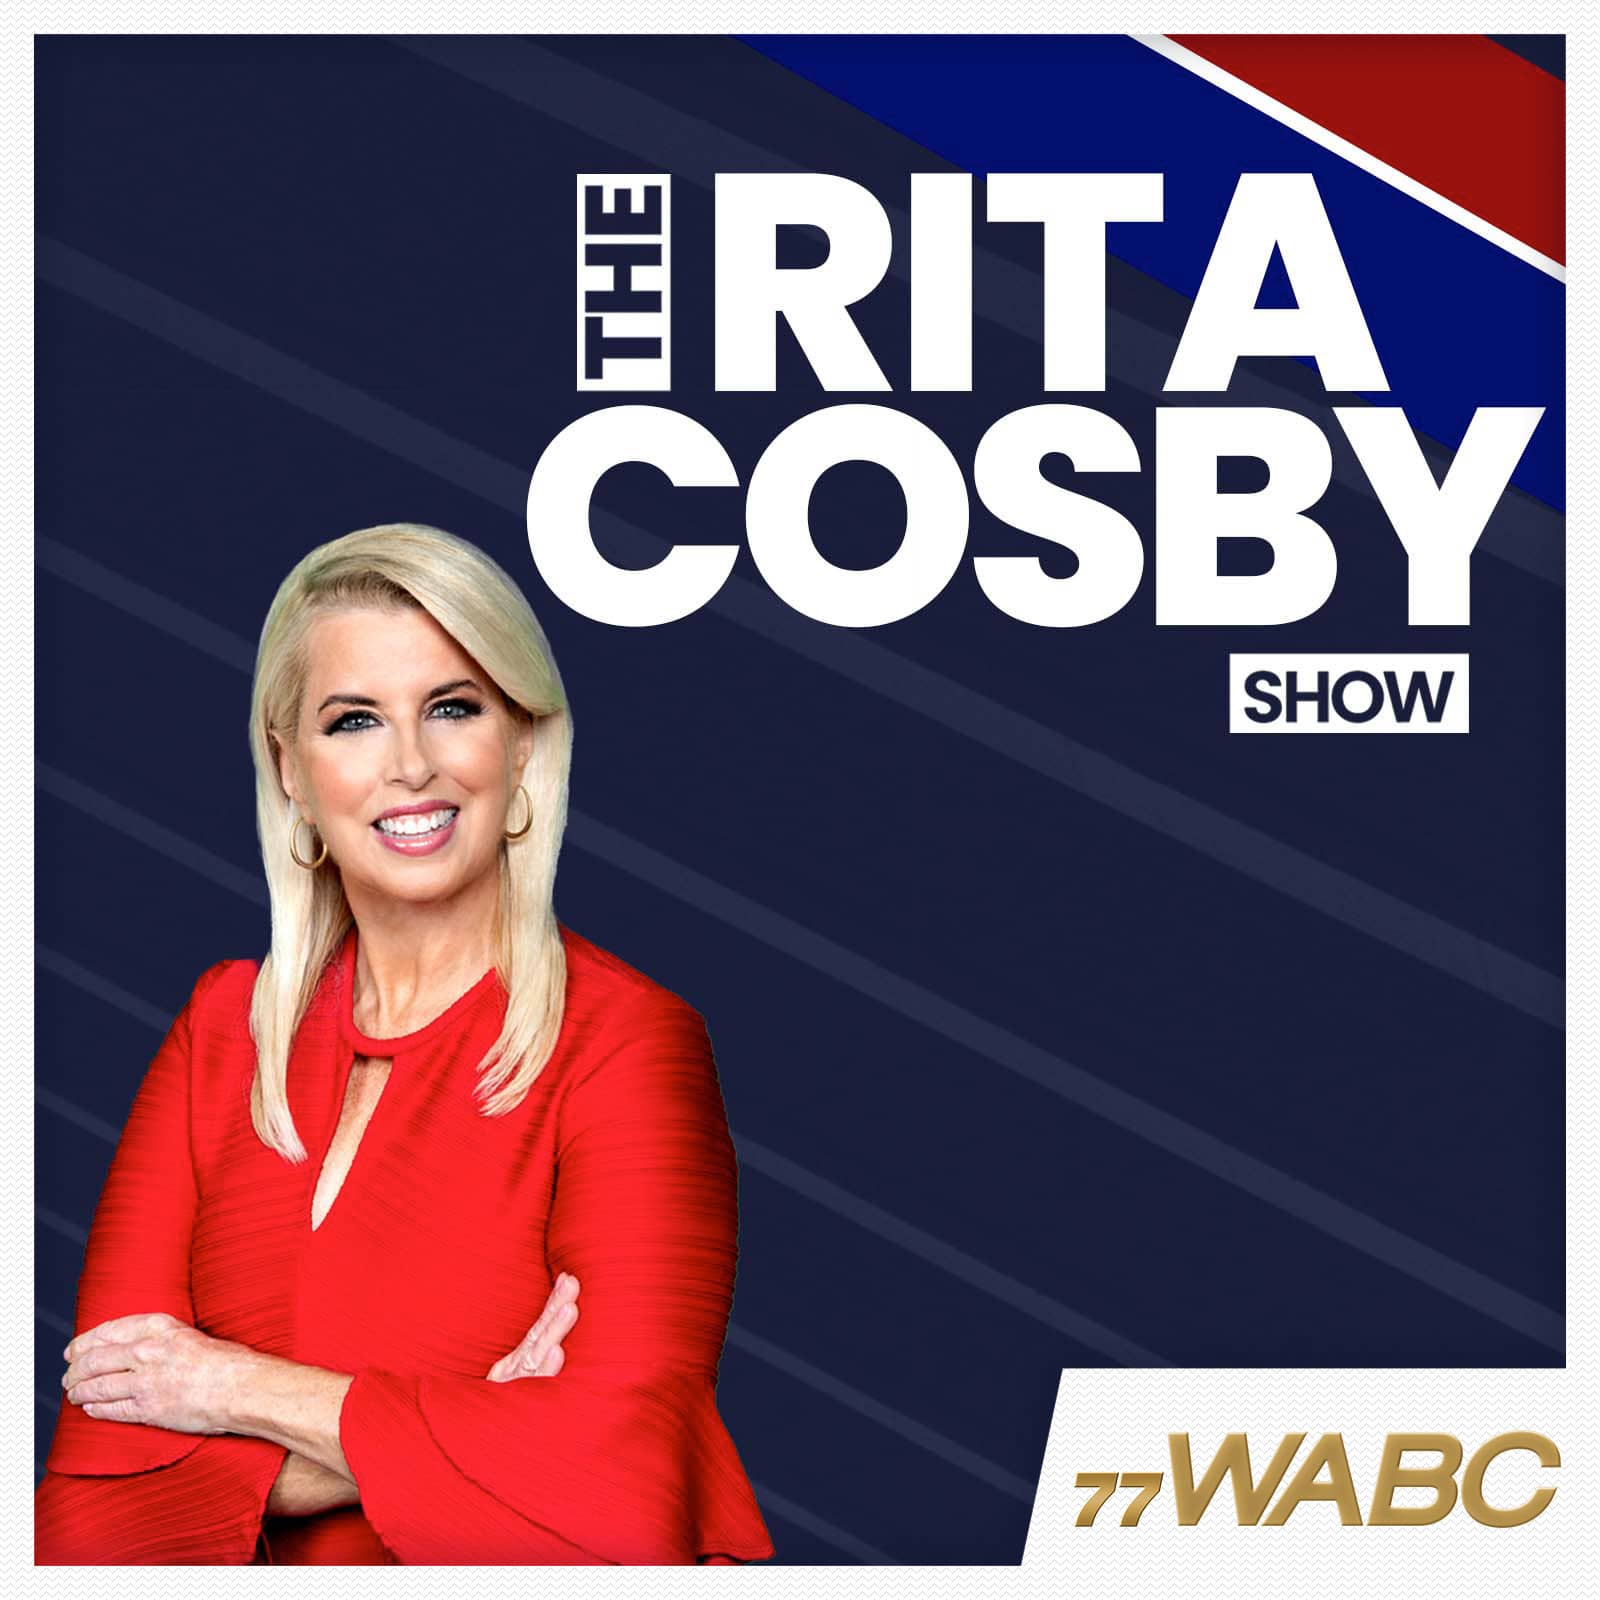 rita-cosby-podcast-new-logo731524